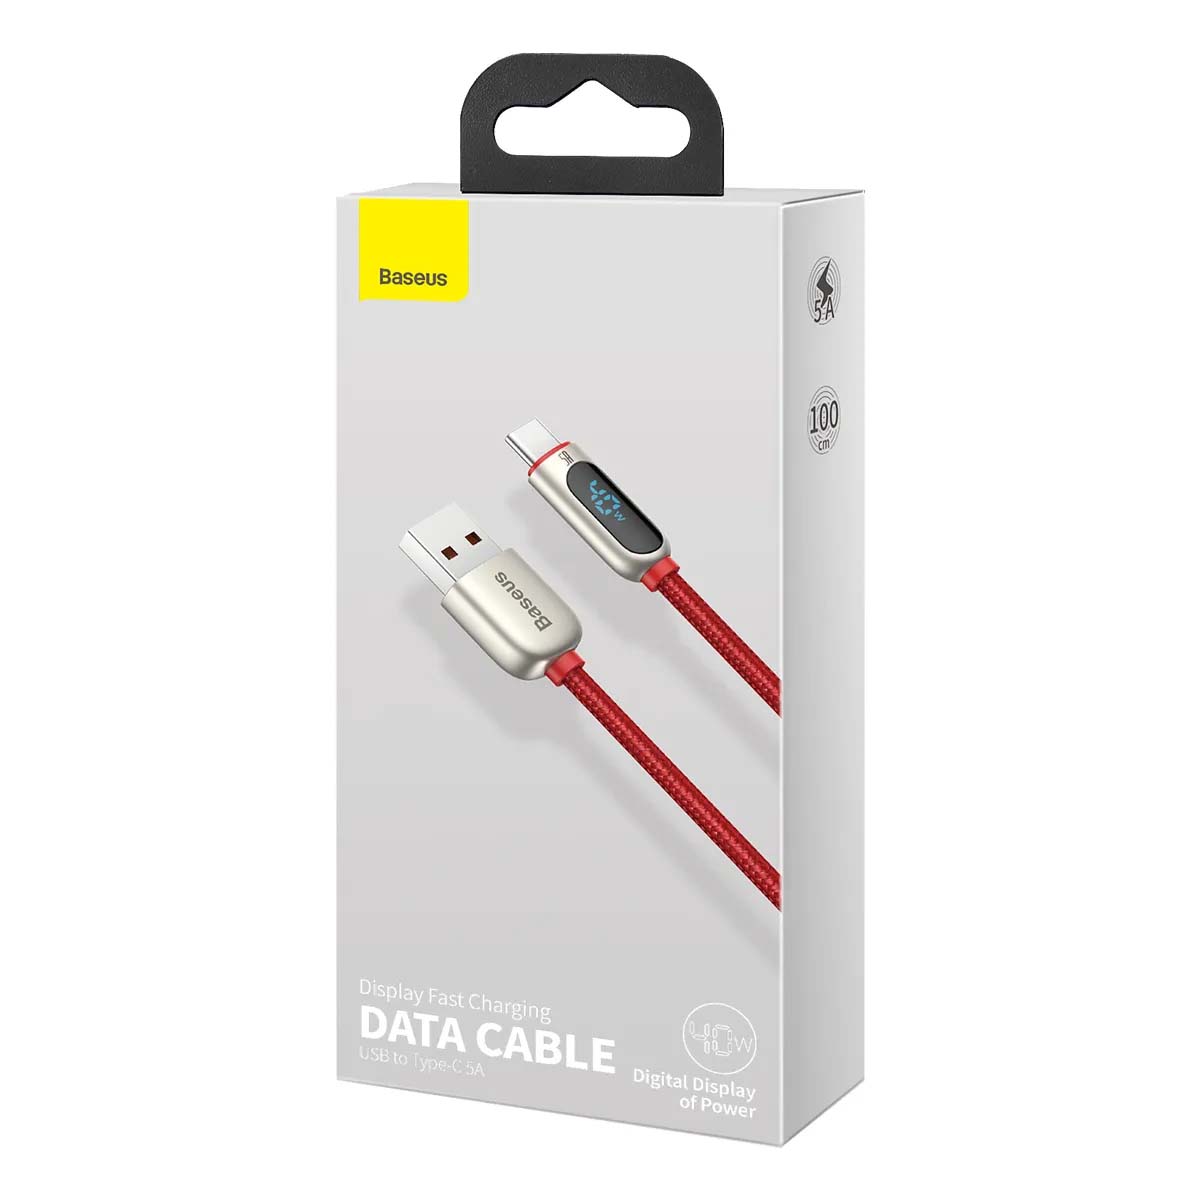 Кабель Baseus Display Fast Charging USB Type C, 40W, 5A, длина 1 метр, цвет красный